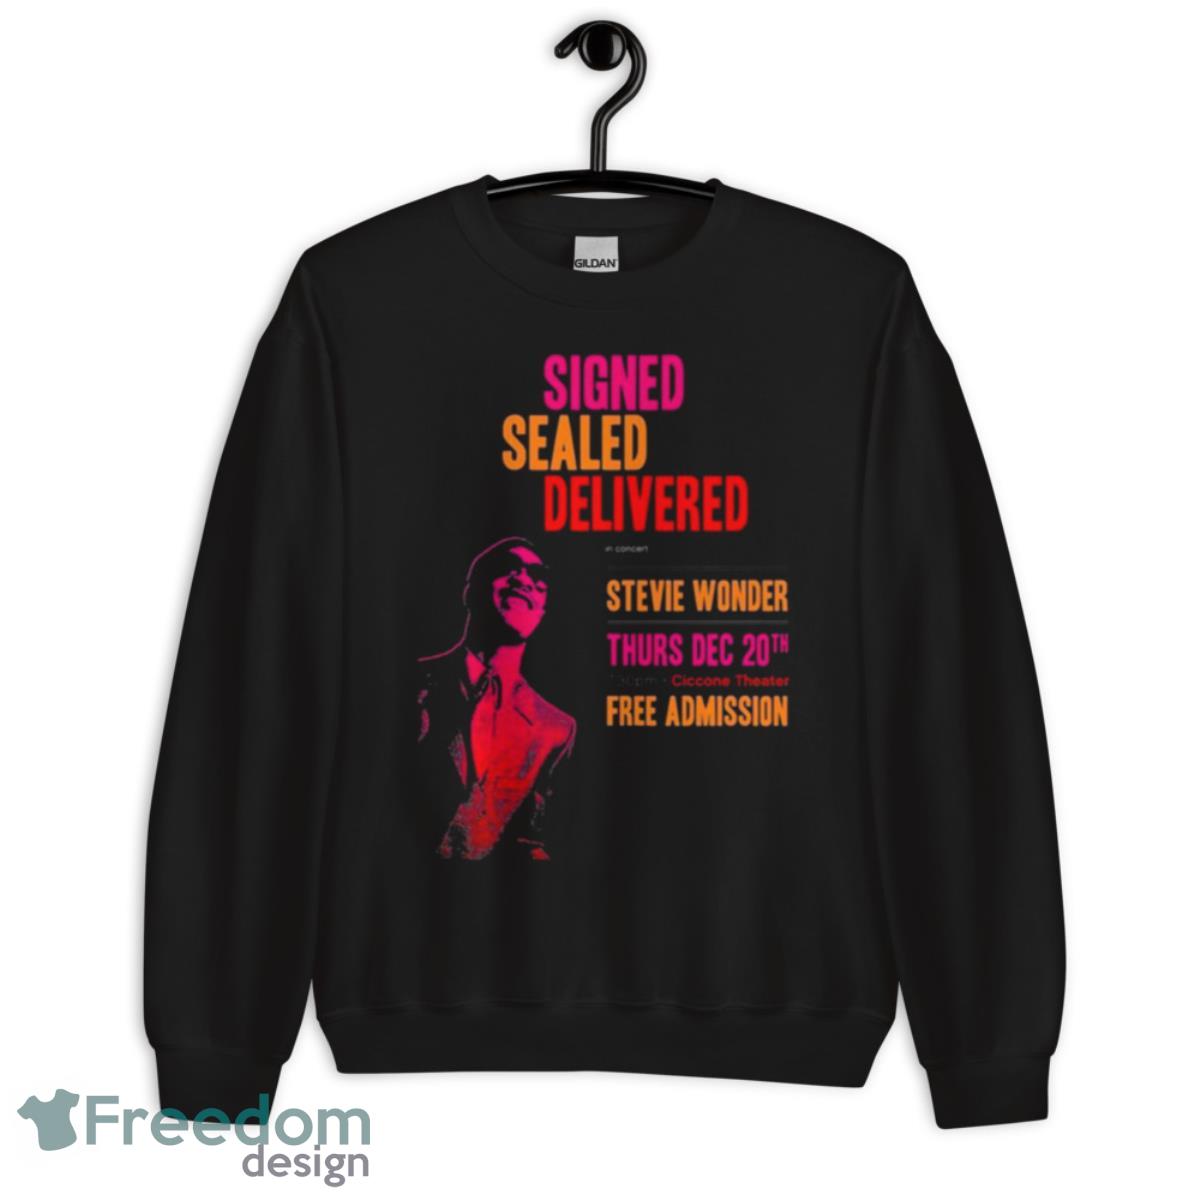 Signed Sealed Delivered Stevie Wonder shirt